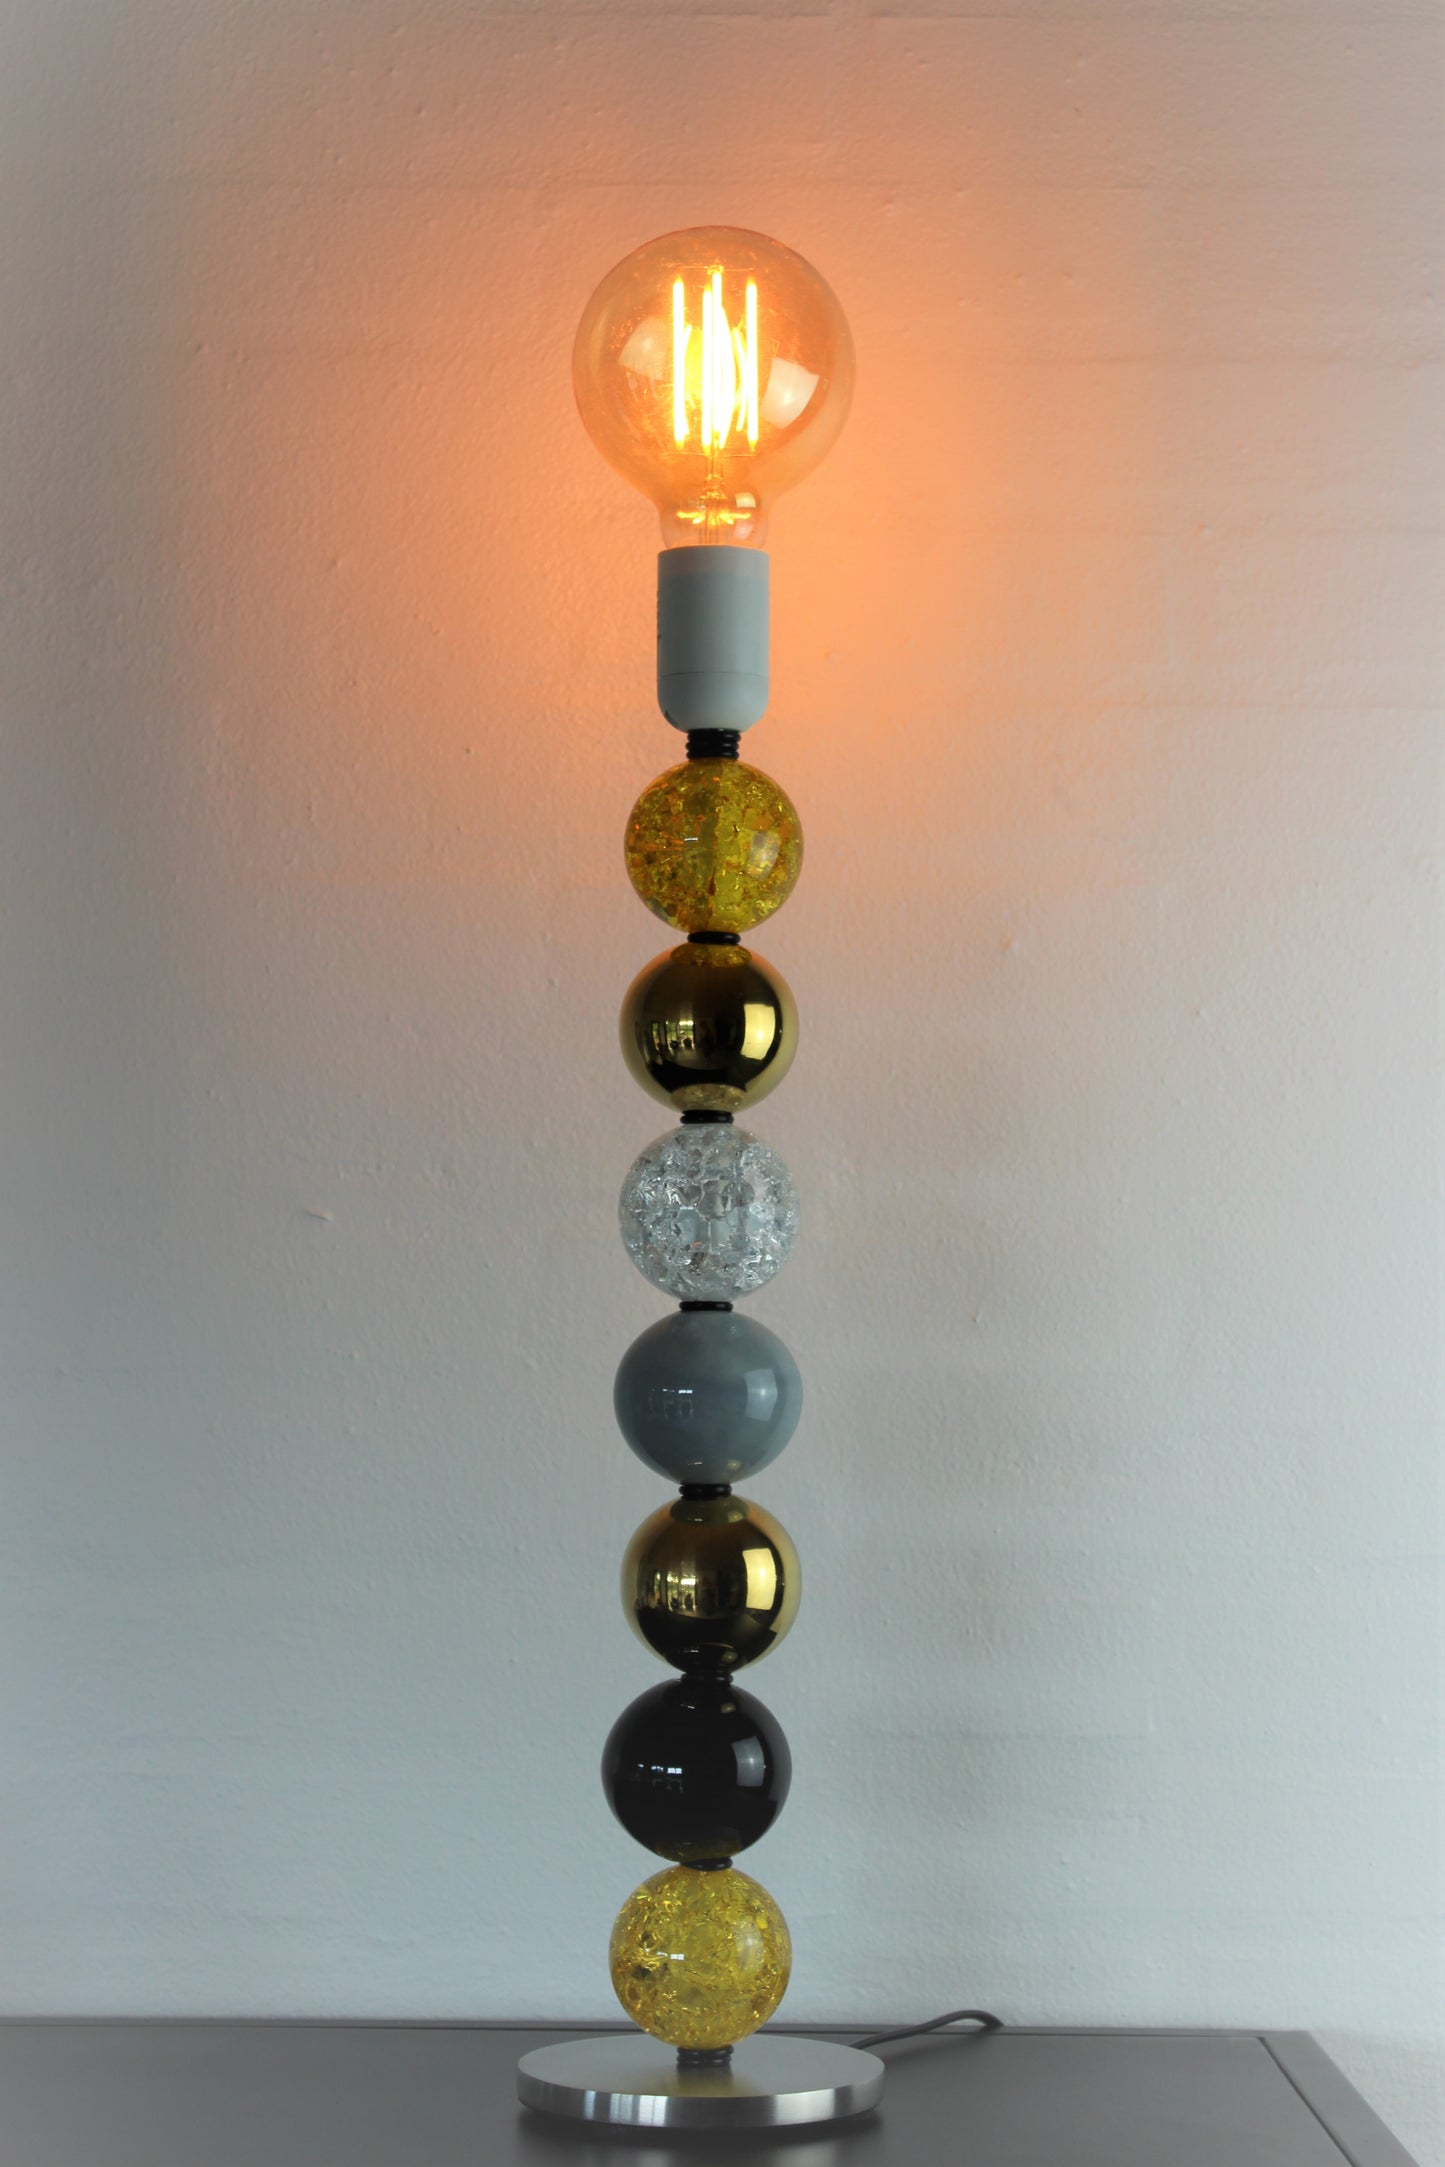 My Candle - Lampe med 7 kugler, model 9302